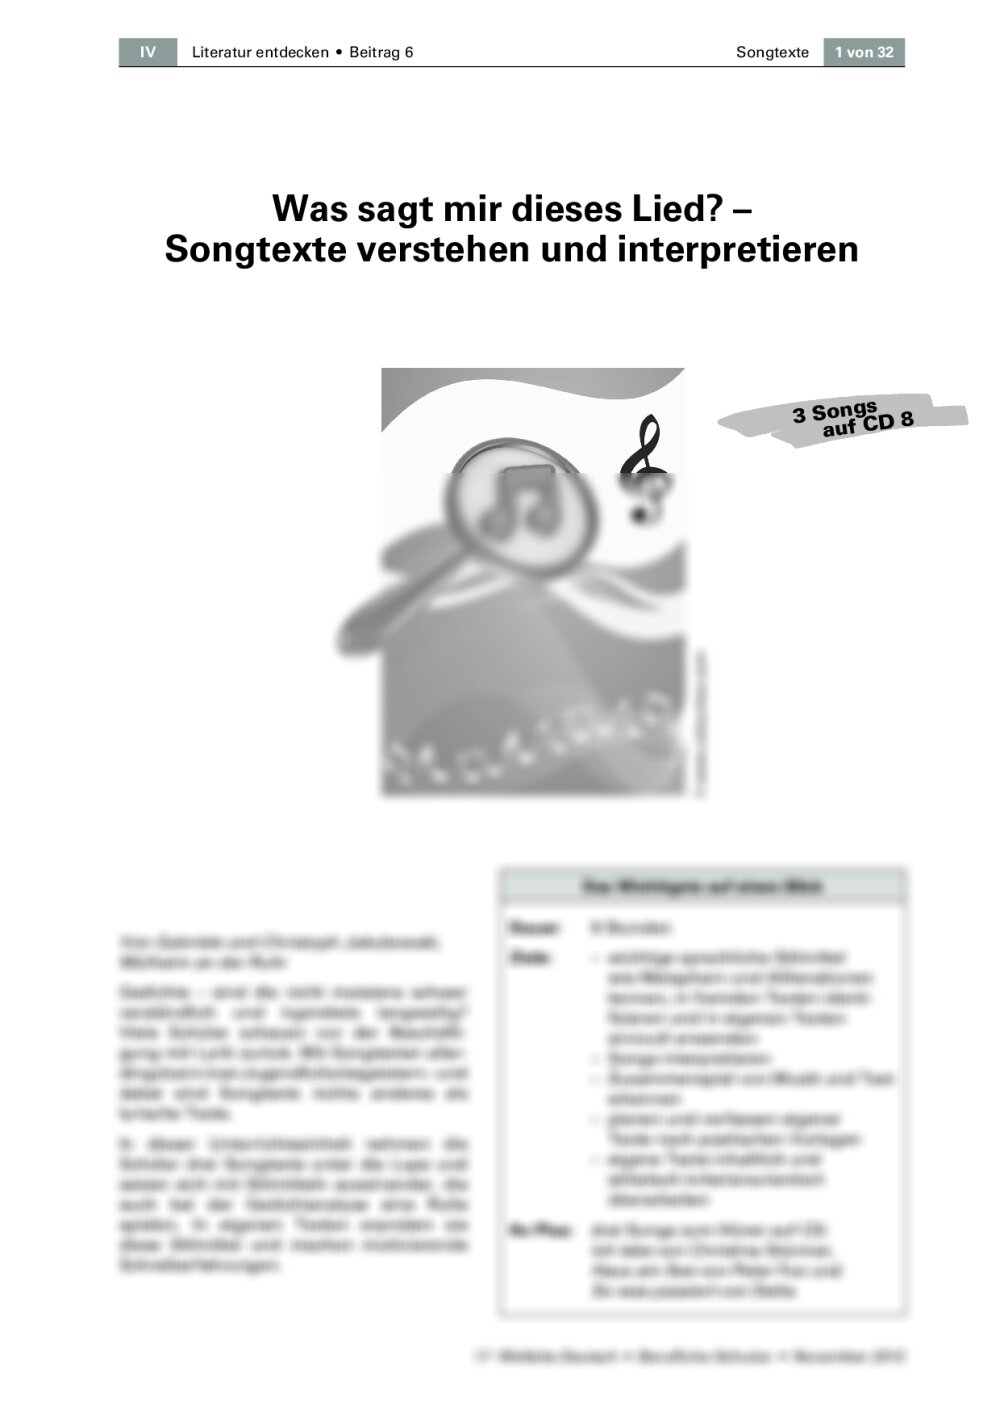 Songtexte verstehen und interpretieren - Seite 1